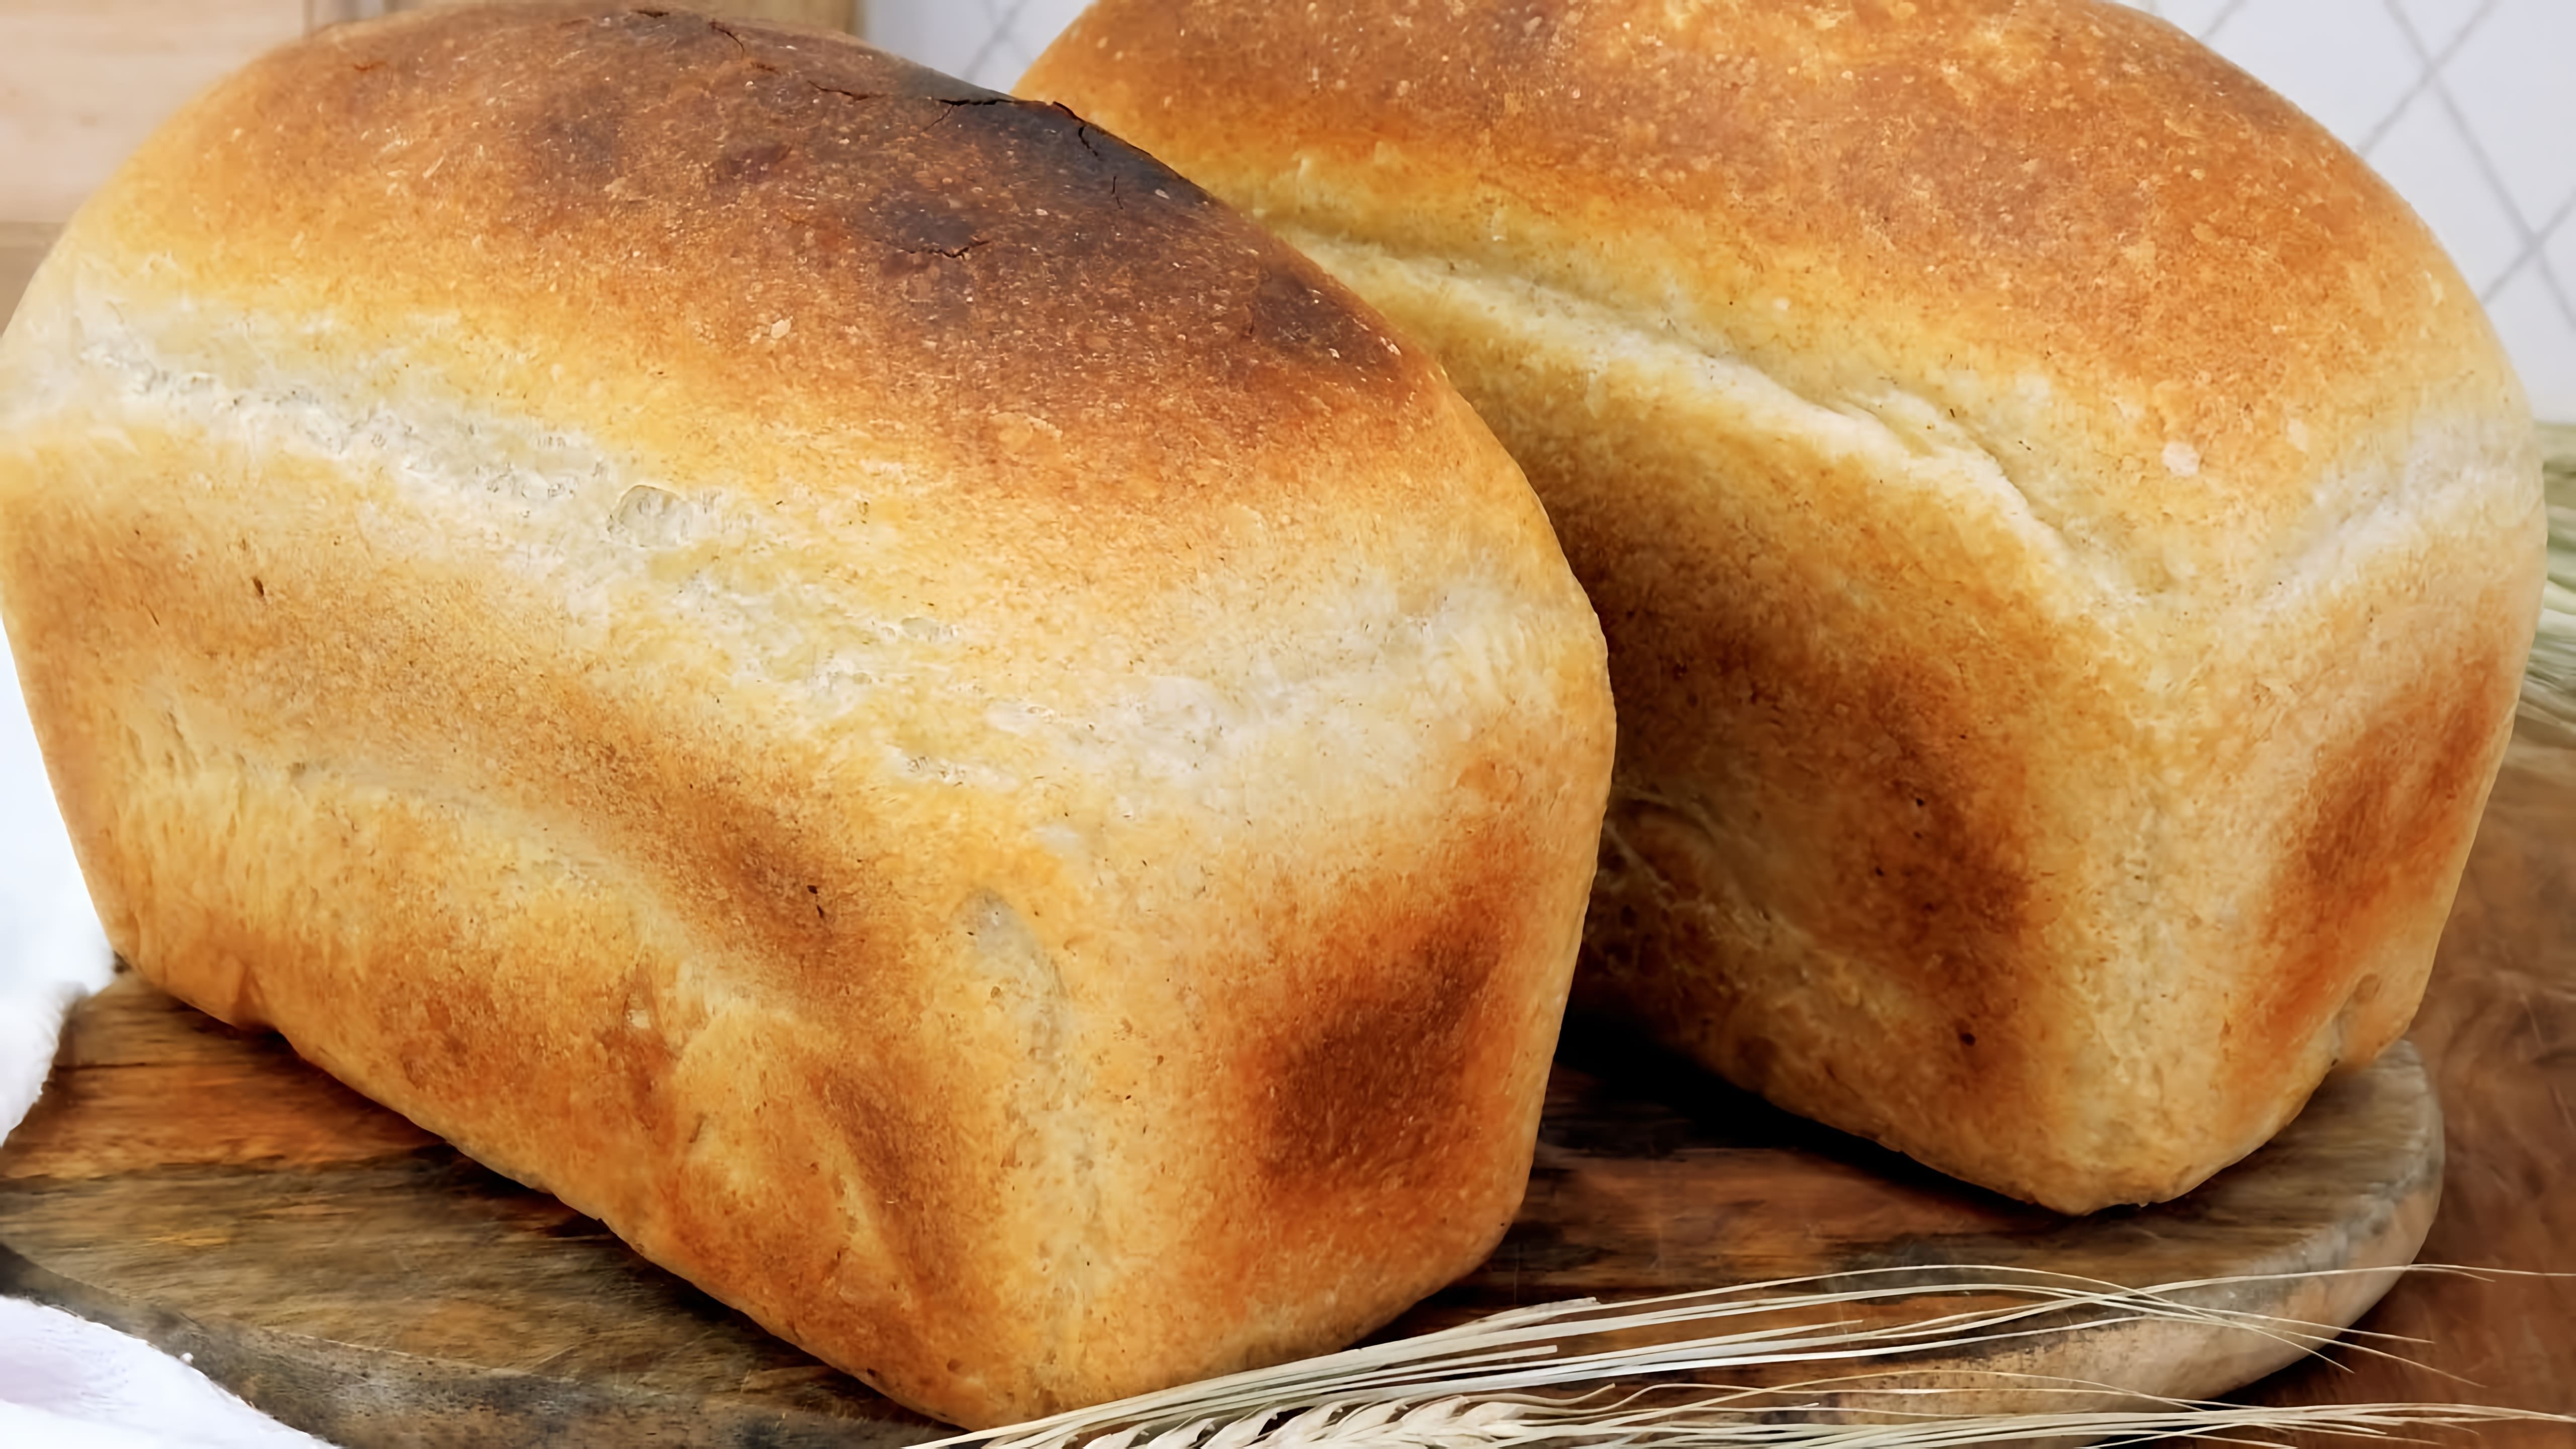 В этом видео демонстрируется рецепт приготовления ароматного пшеничного хлеба на ржаной опаре